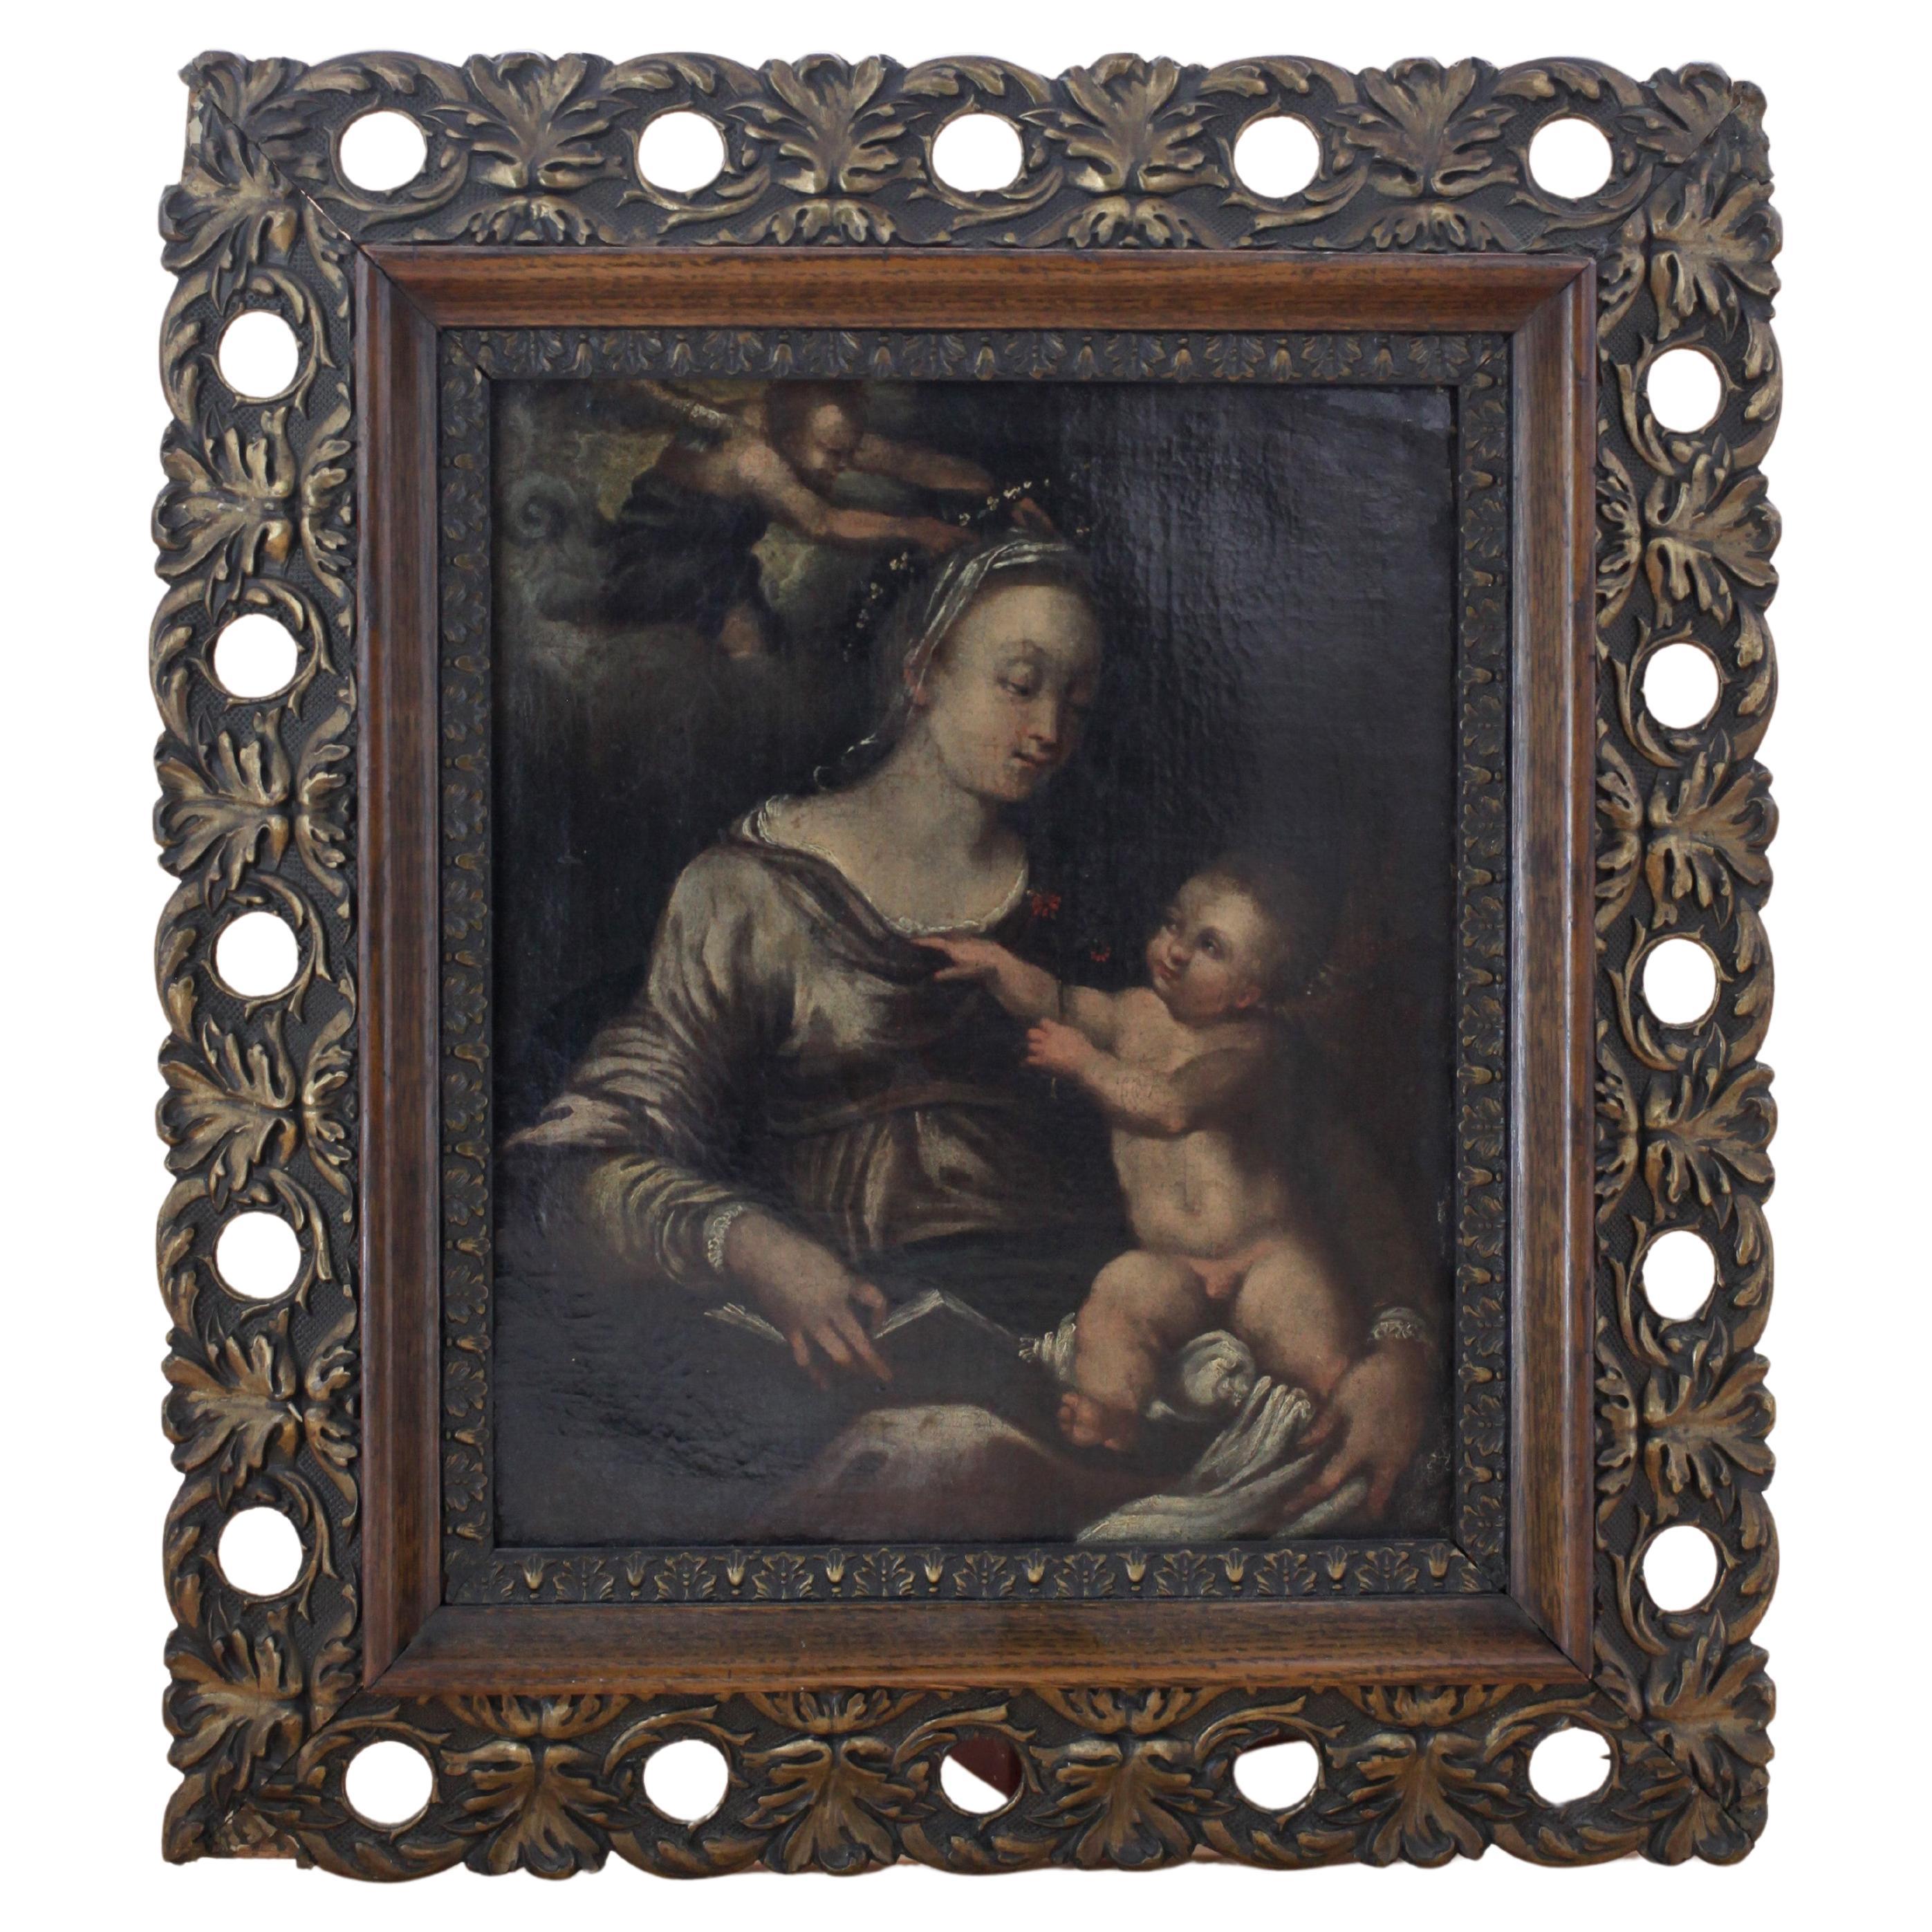 Madonna e Bambino by Carlo Garofalo (active in Mardrid and Naples 1692-1705) 